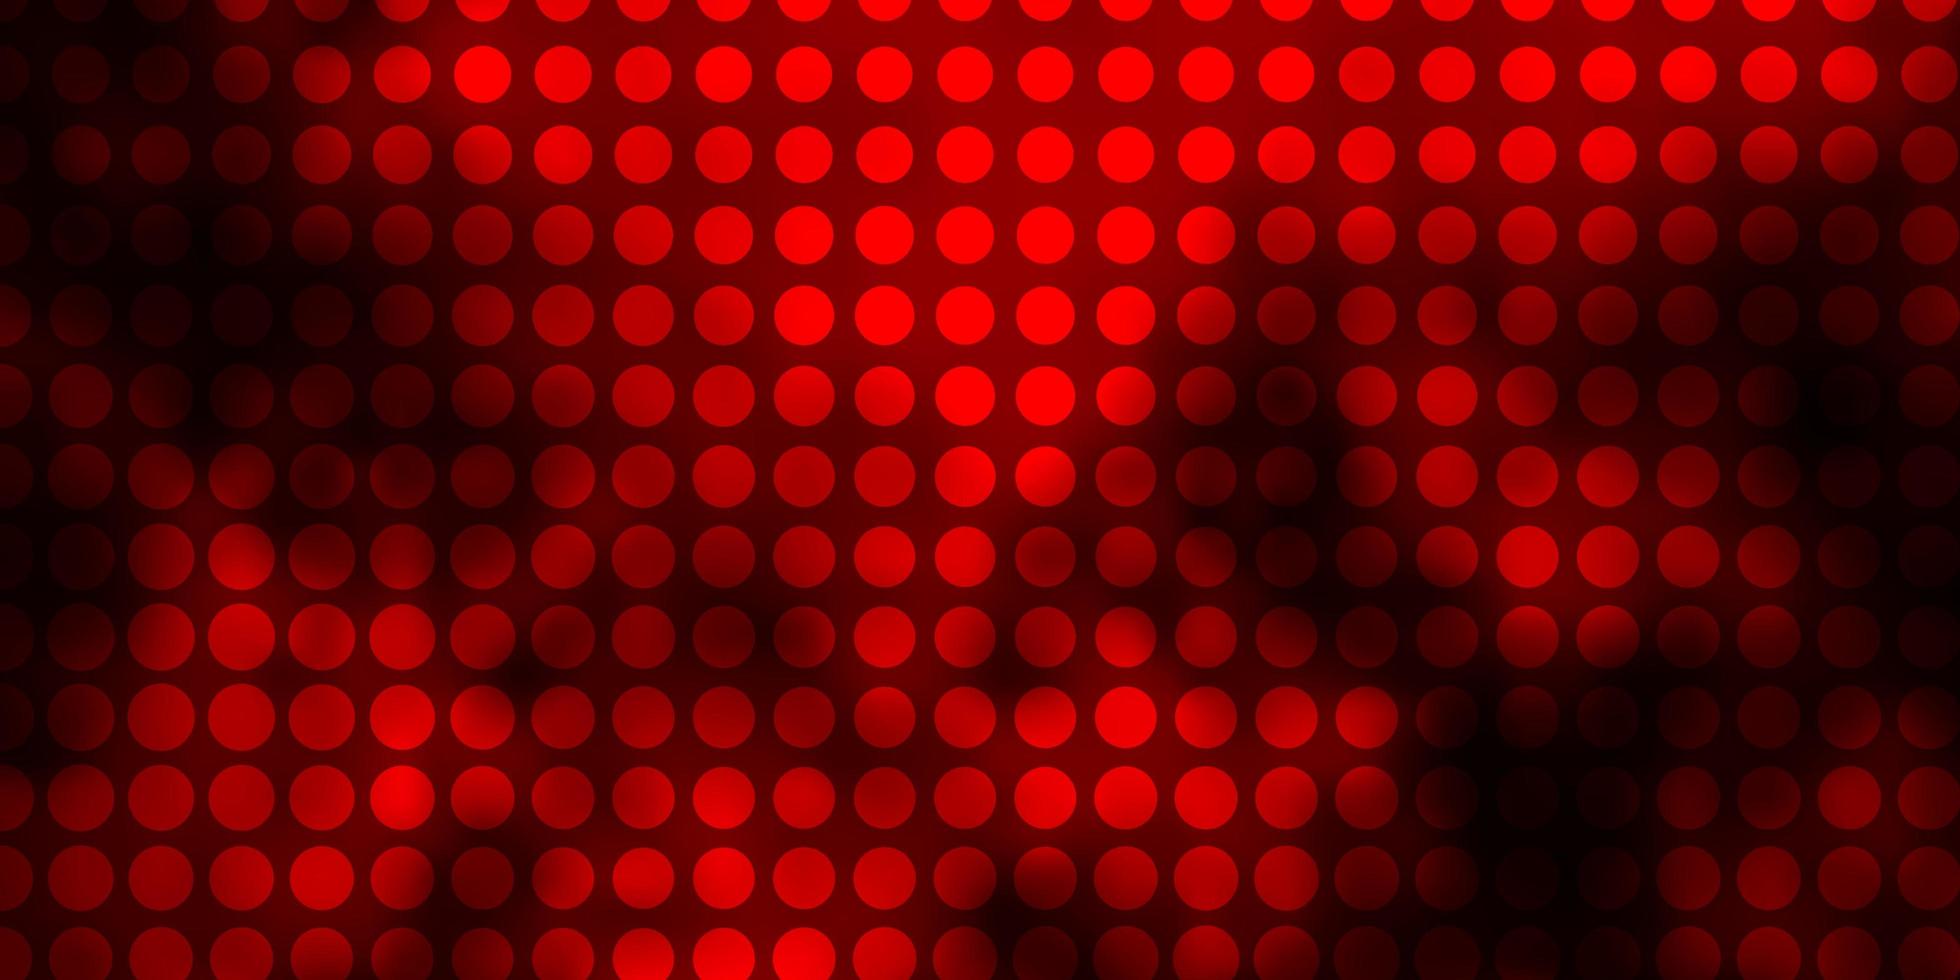 Plantilla de vector rojo oscuro con círculos Ilustración abstracta moderna con patrón de formas de círculo colorido para páginas de destino de sitios web